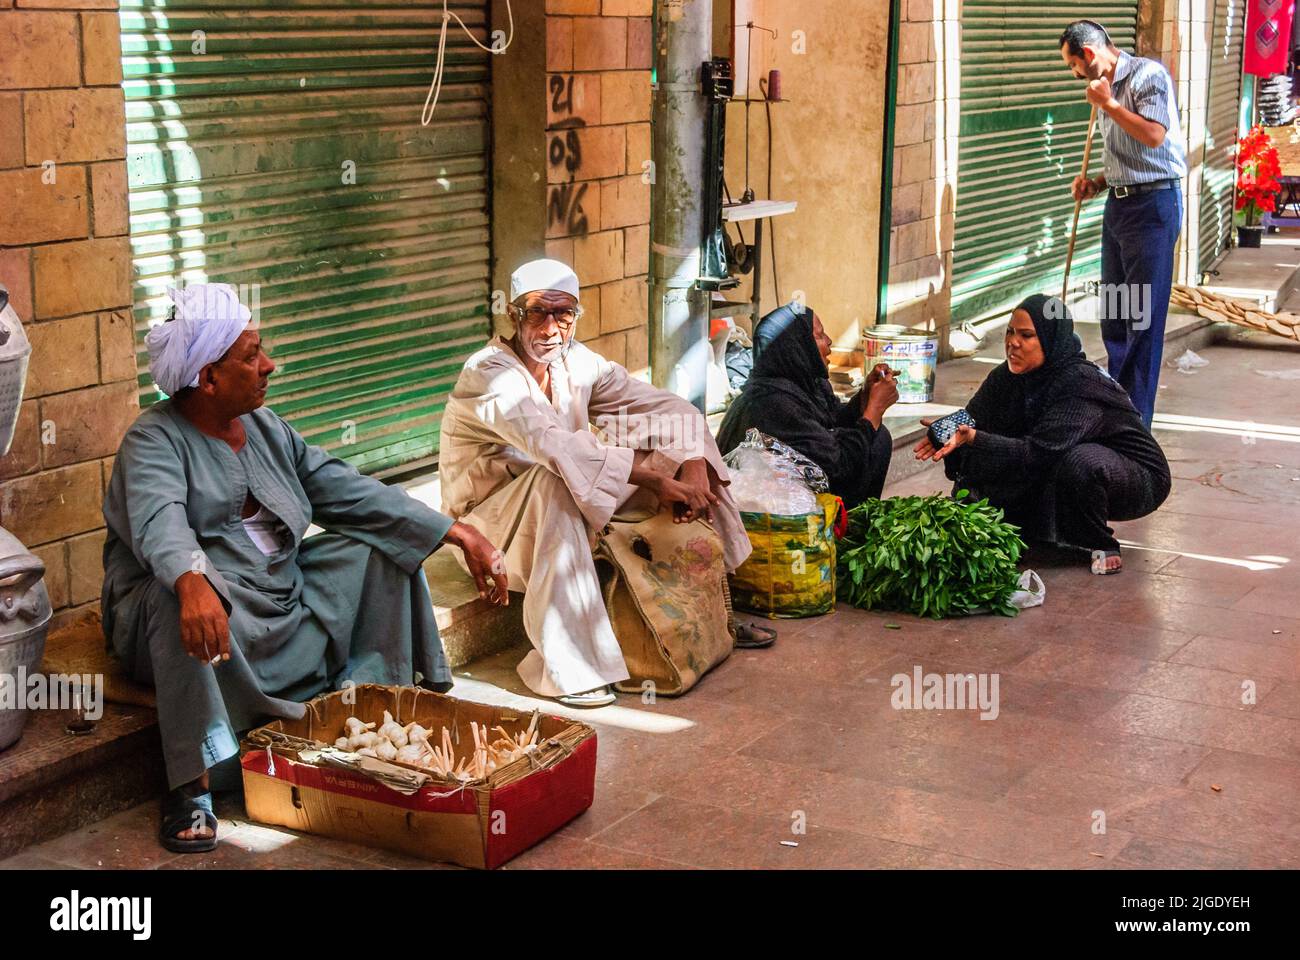 Street vendors in the Aswan market - Upper Egypt Stock Photo